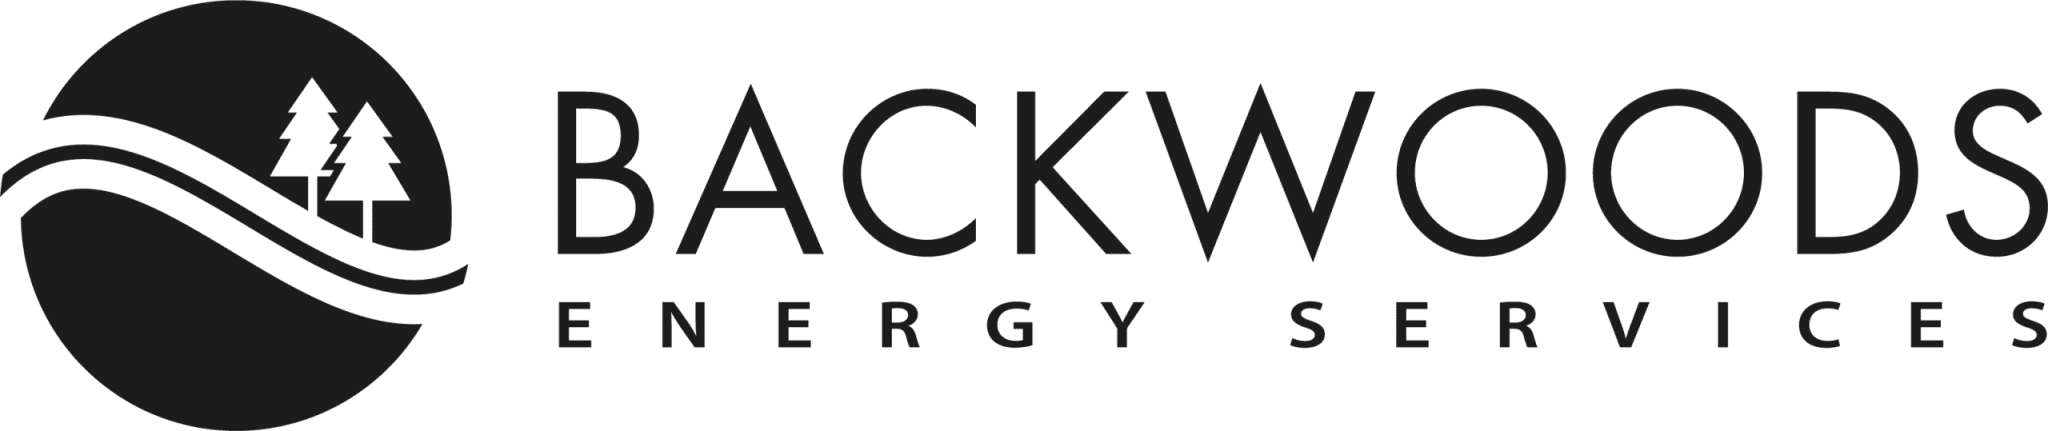 backwoods_energyservices-BW-scaled